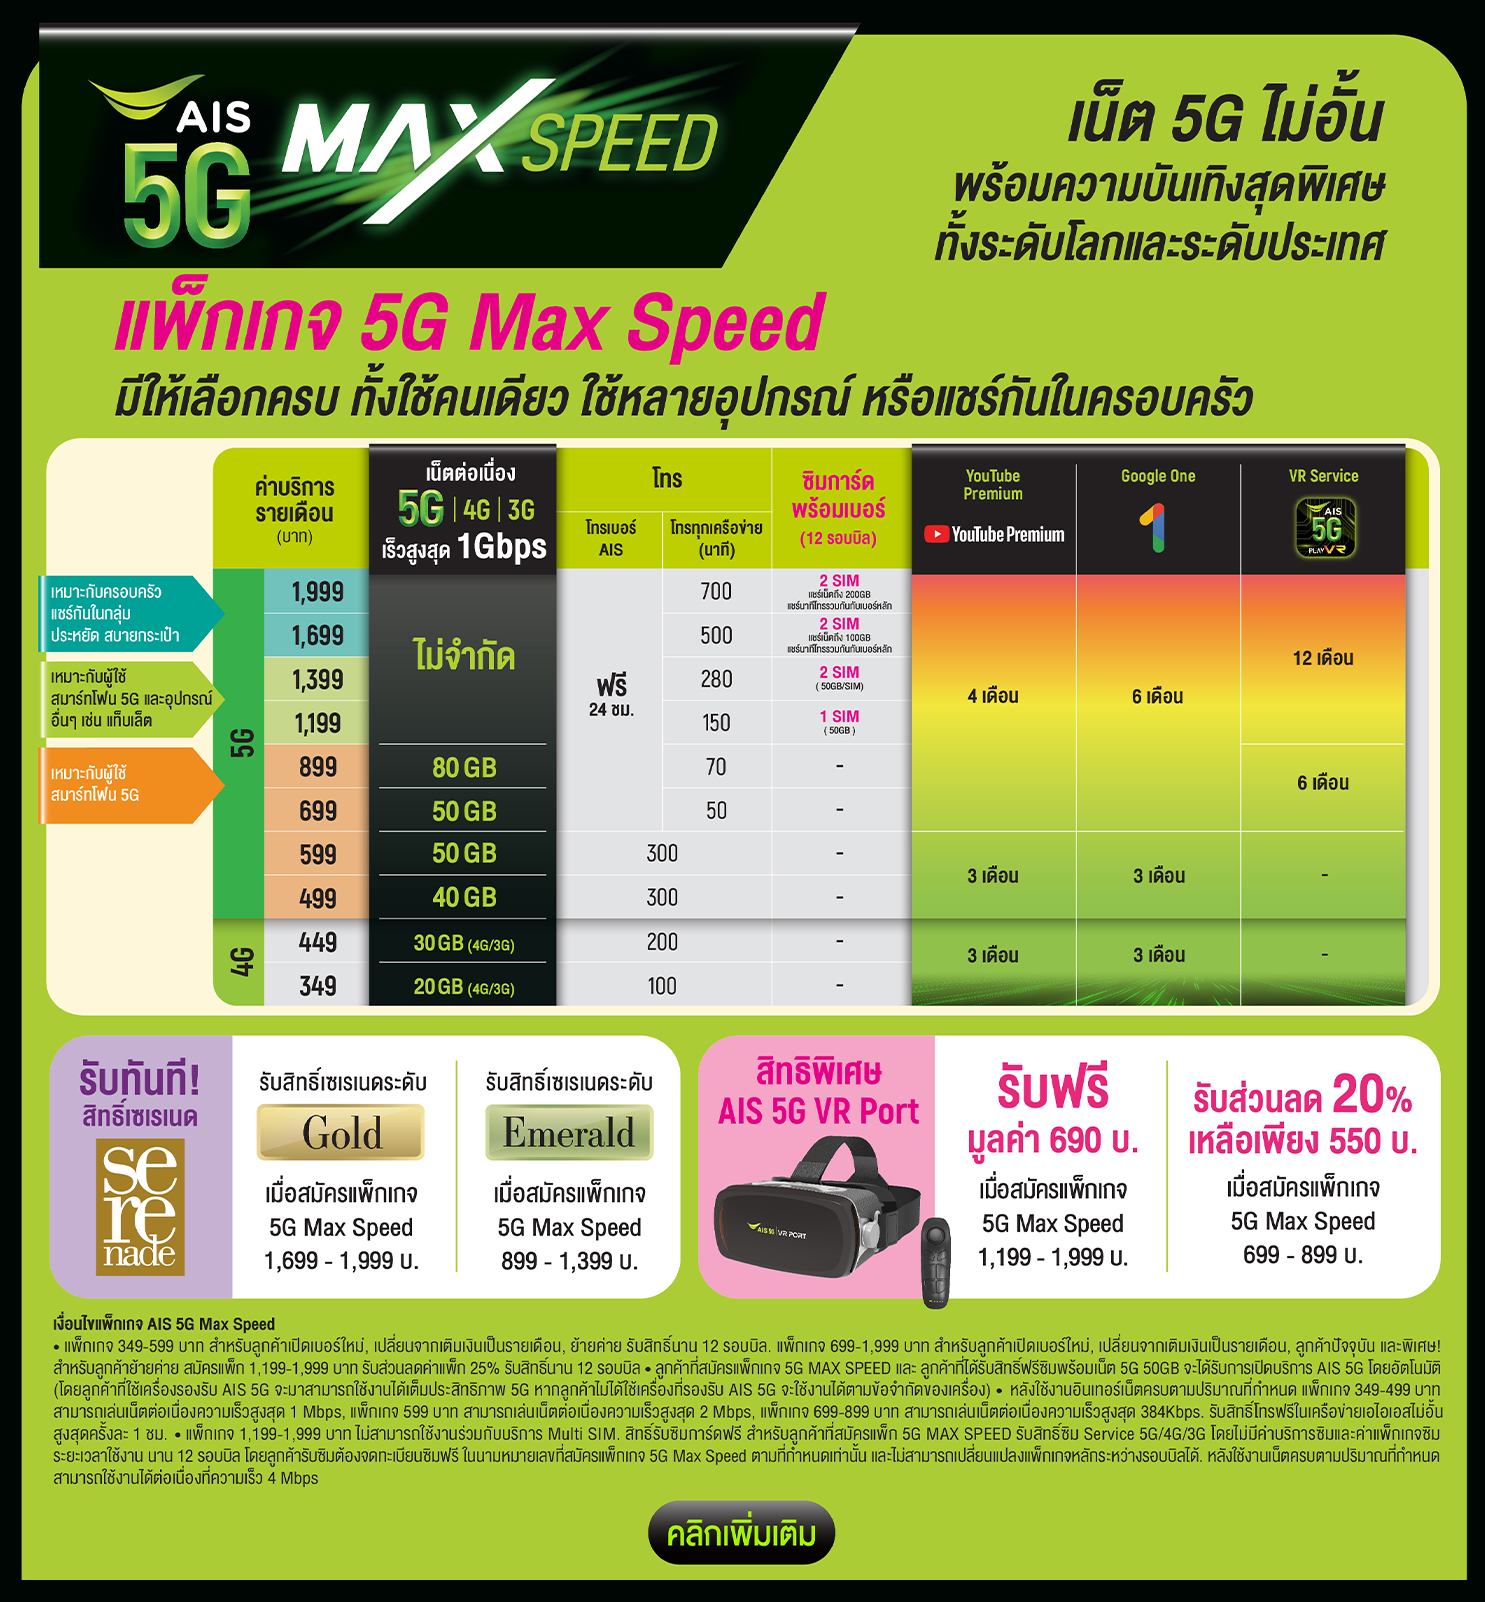 5G Max Speed สนุก ครบ ตอบโจทย์ทุกสไตล์